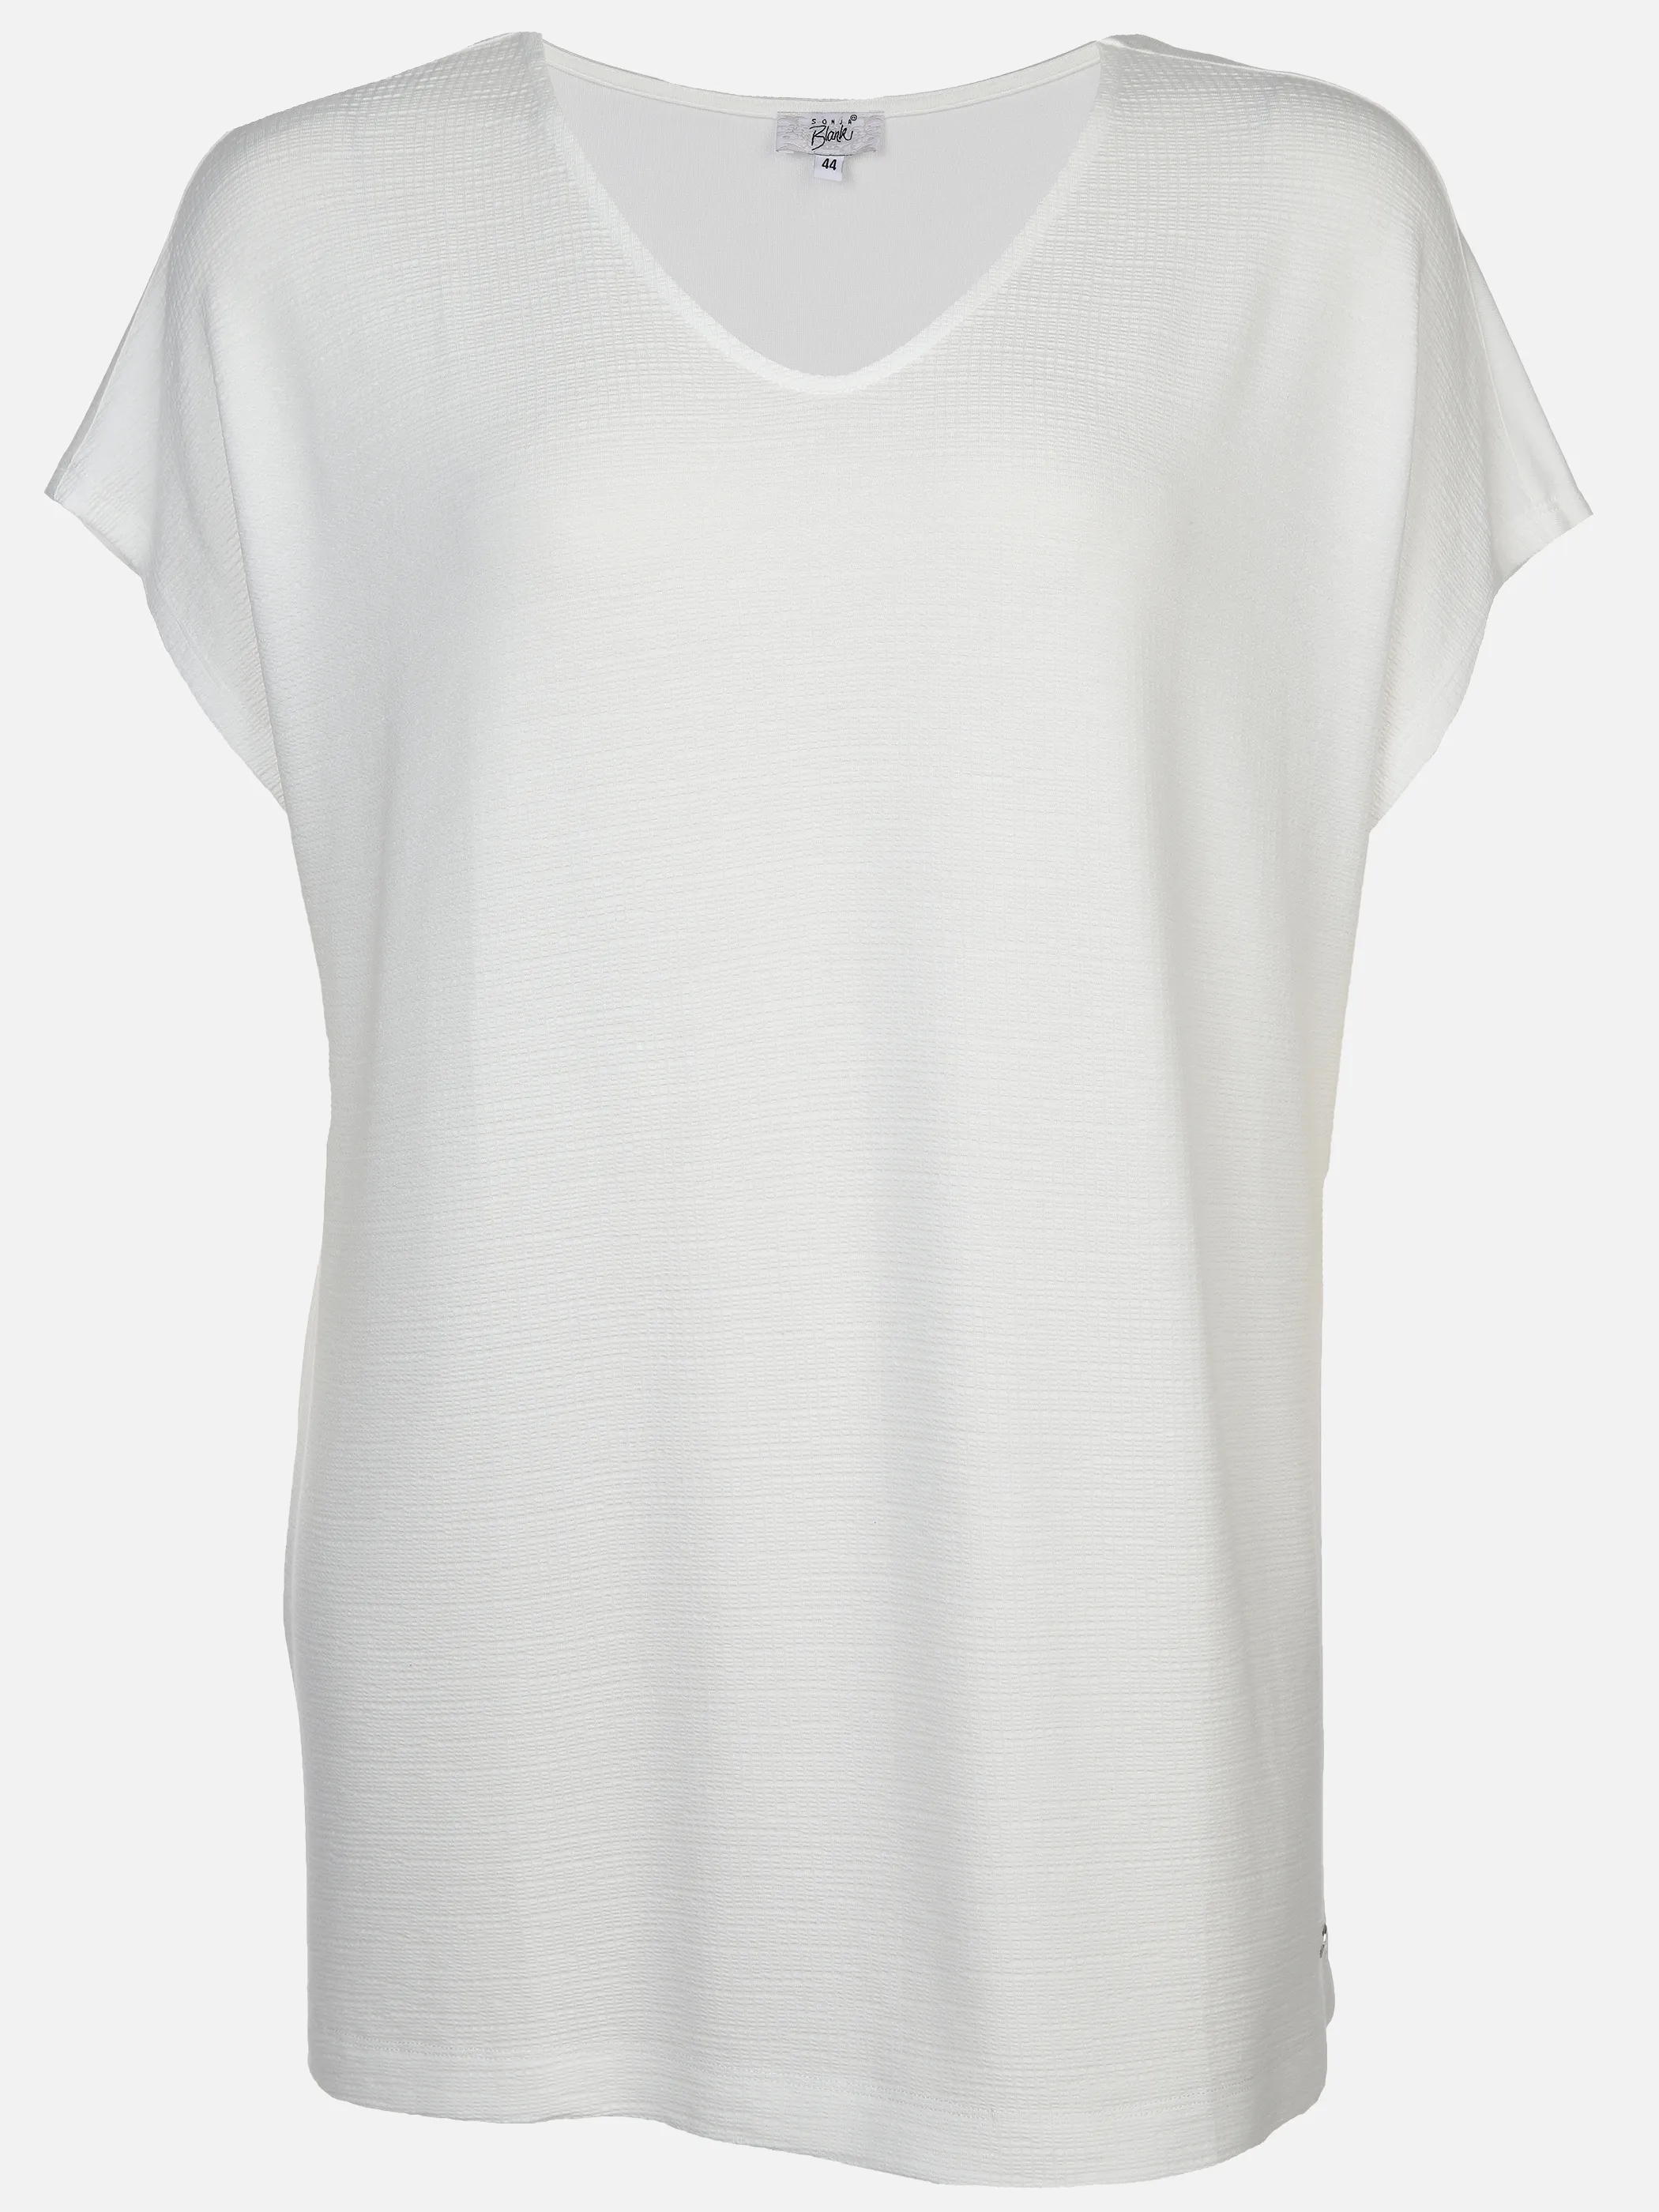 Sonja Blank Da-gr.Gr. T-Shirt V-Ausschnitt Weiß 890335 OFFWHITE 1